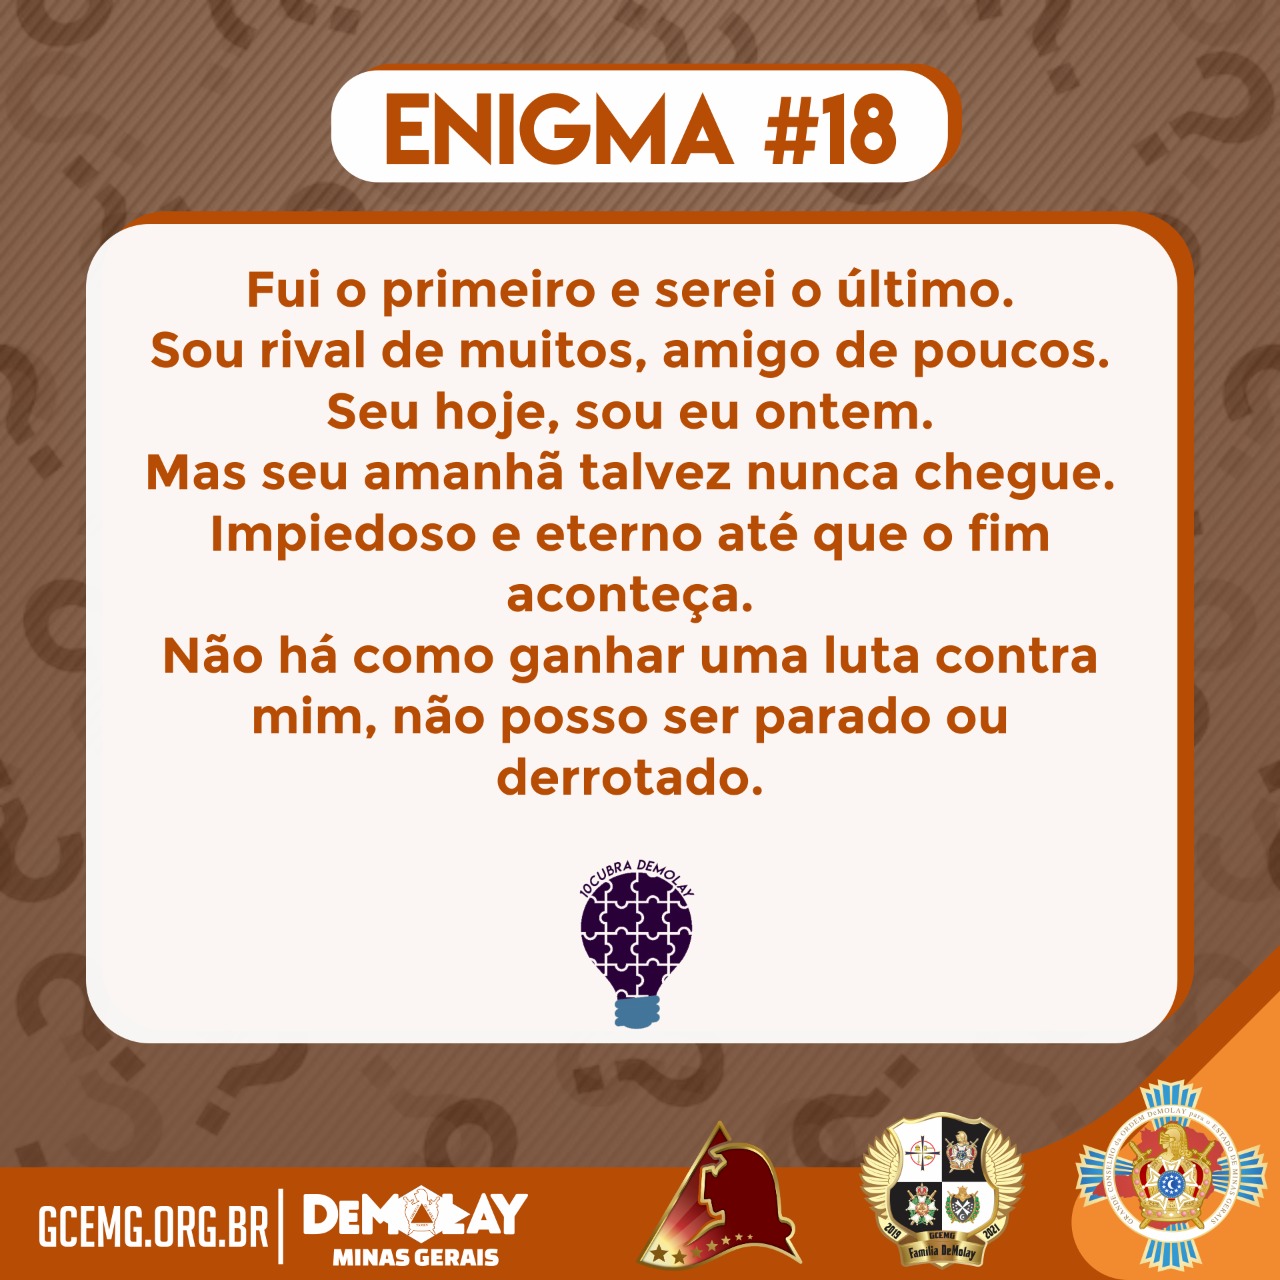 10cubra DeMolay – Enigma #18